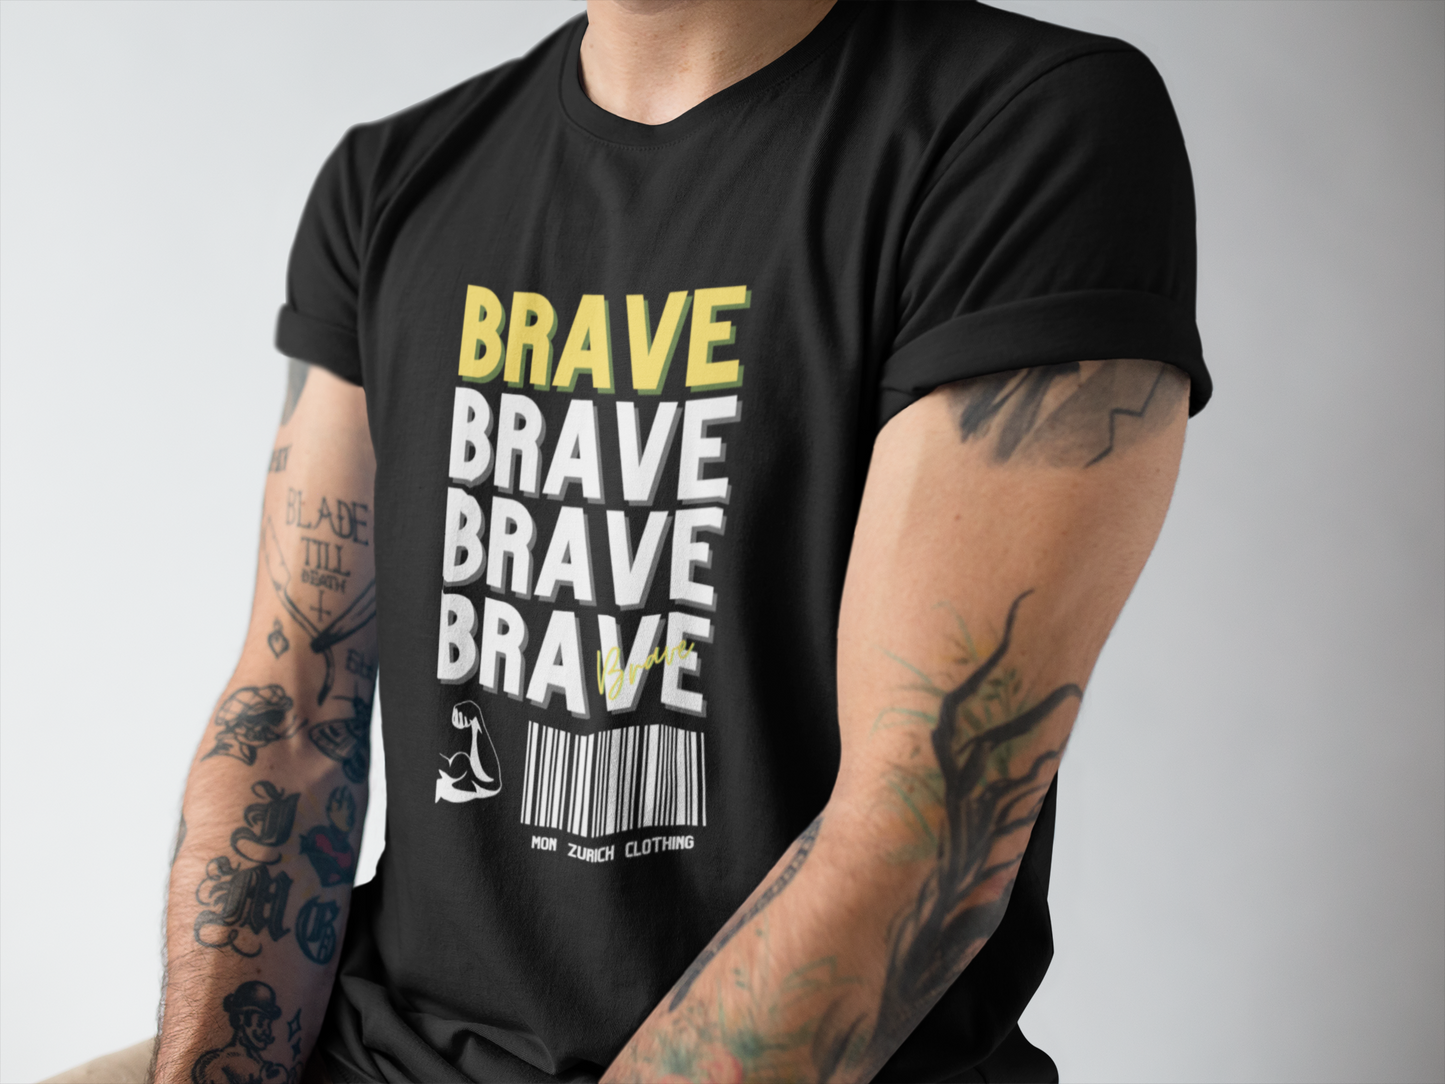 Brave T-Shirt In Dark - Mon Zurich Originals